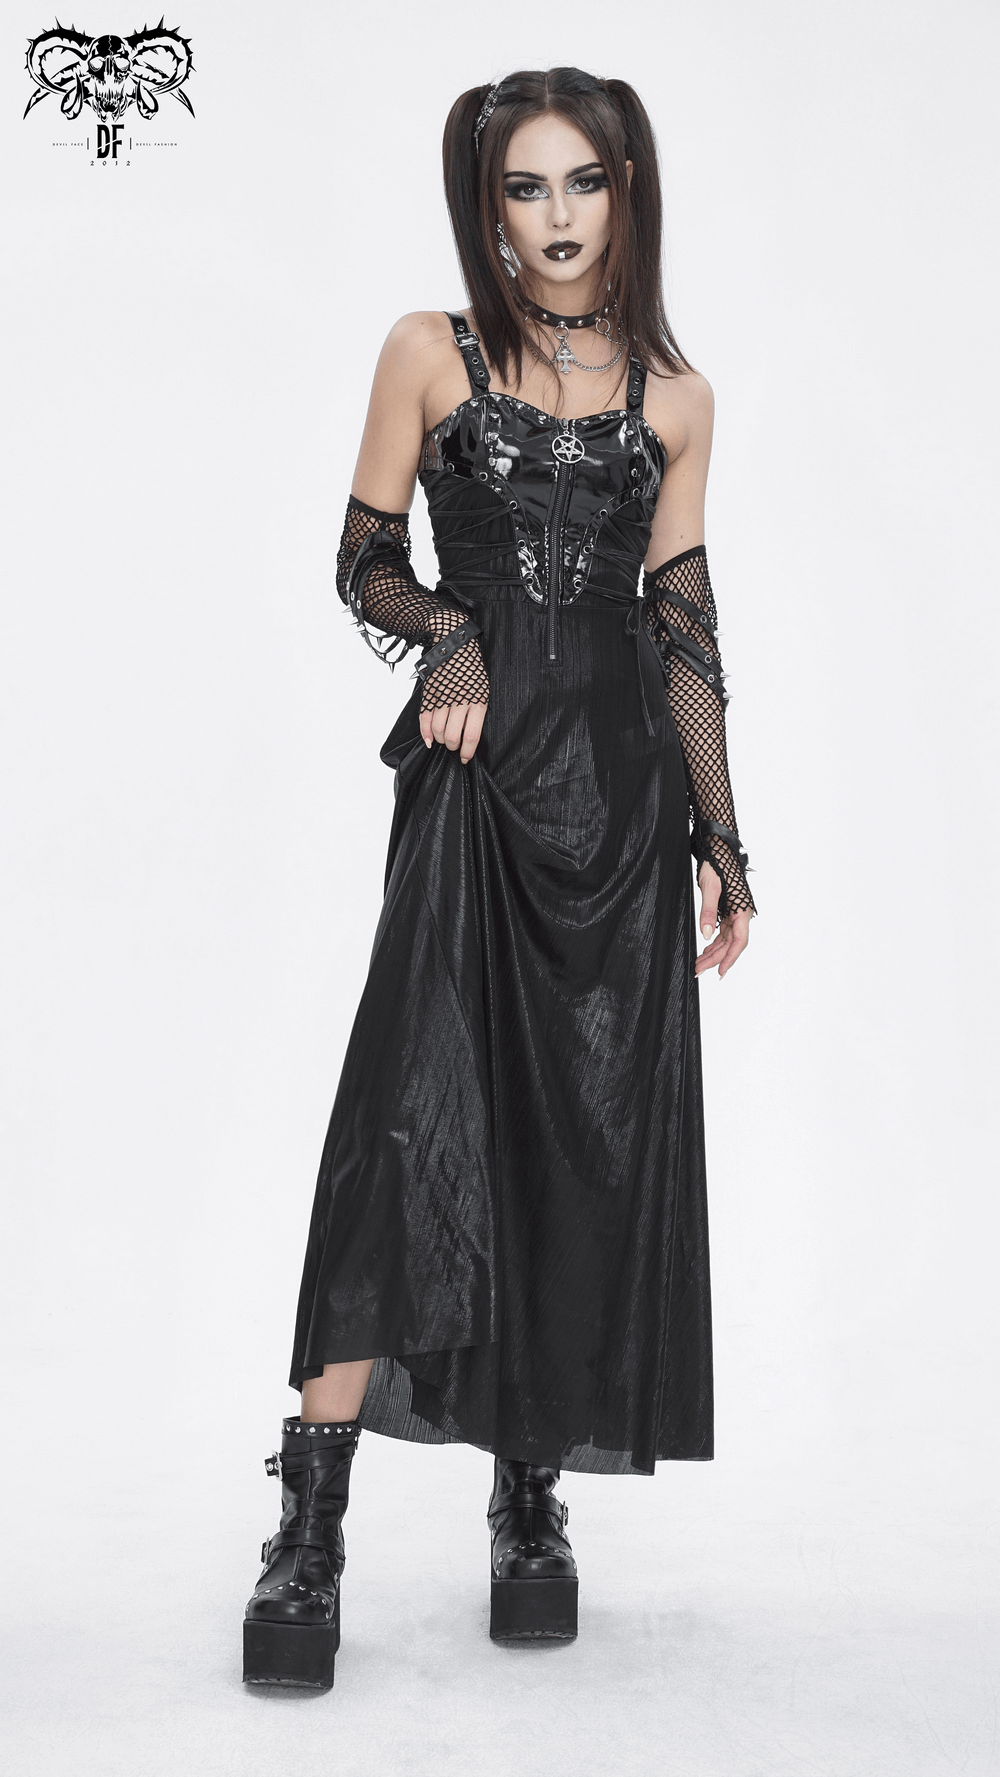 Gothic Lace-Up Back Dress with Adjustable Shoulder Straps